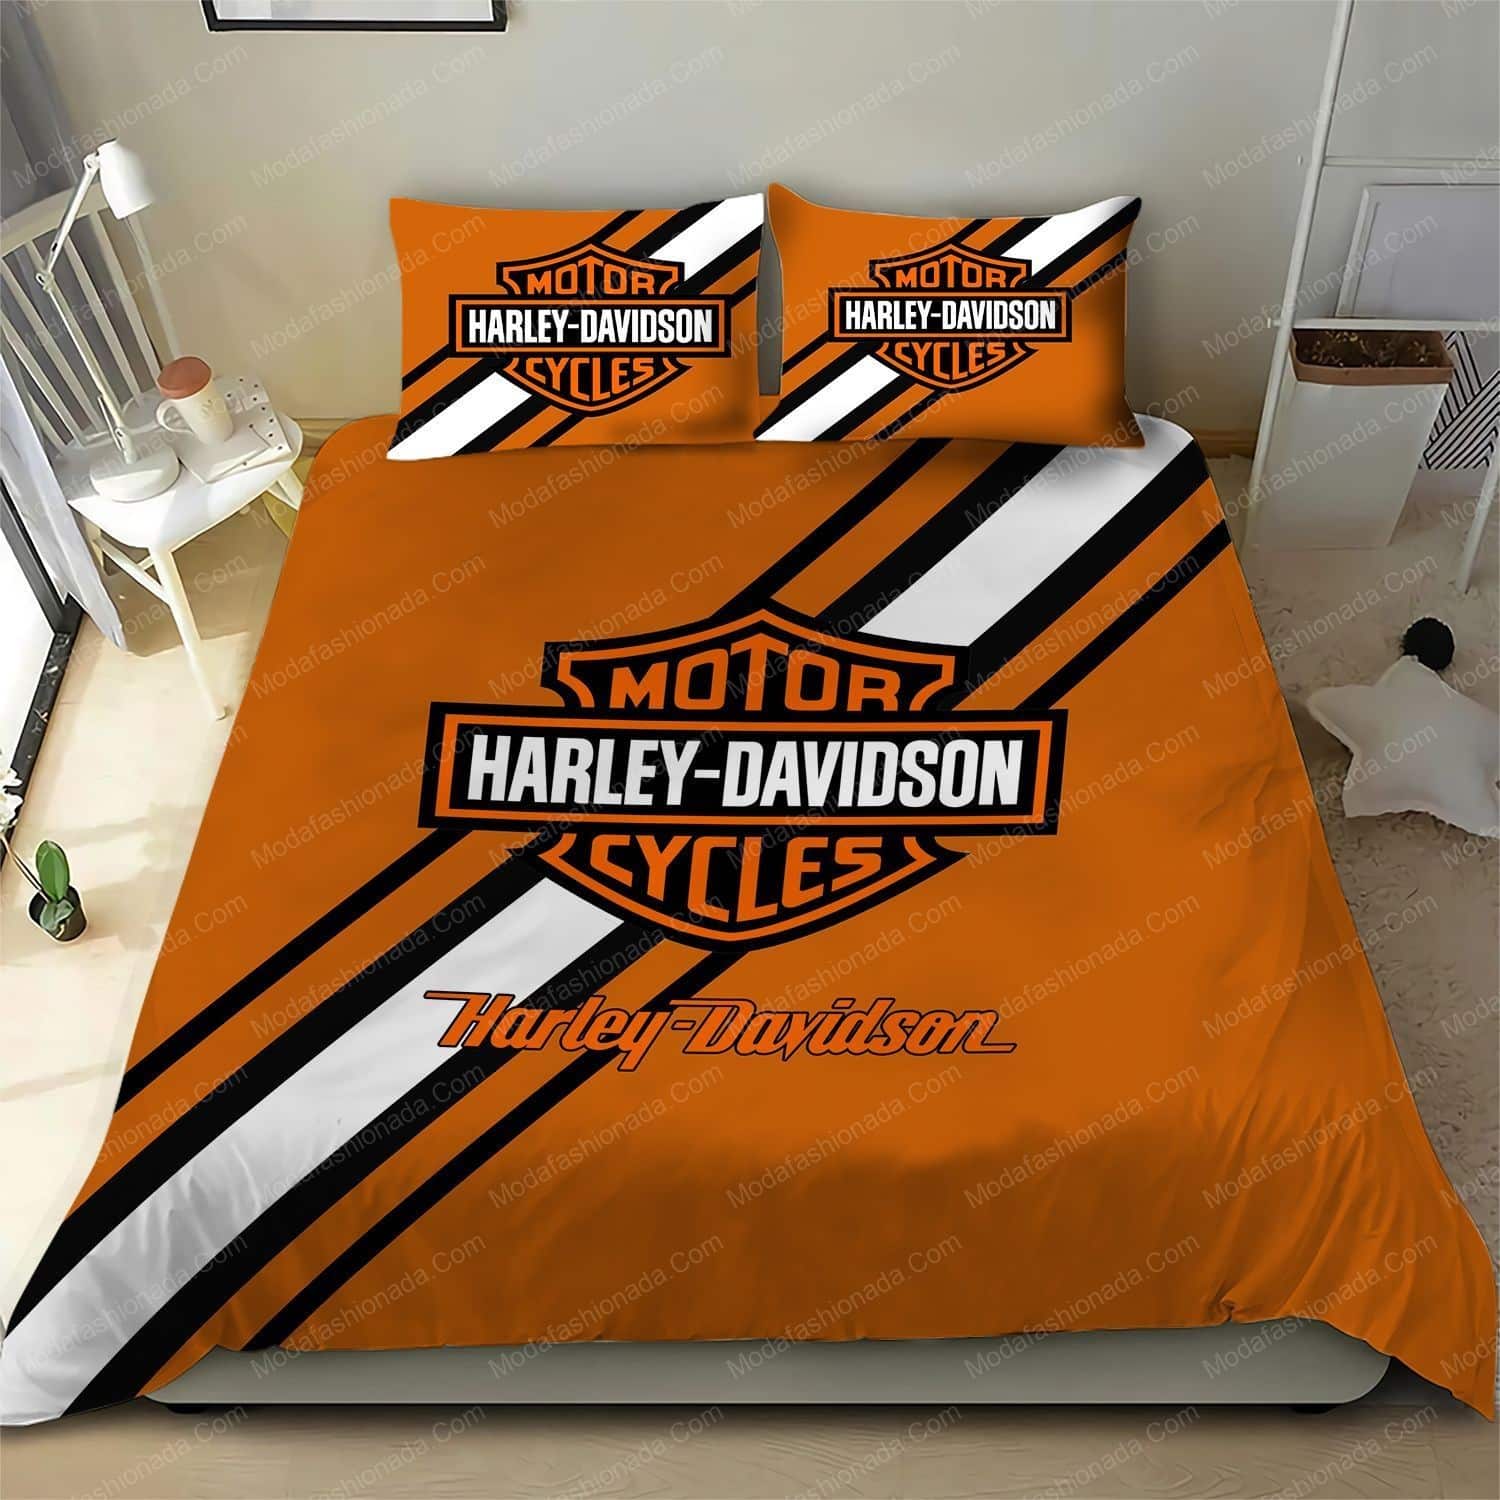 Harley Davidson Motorcycles Logo Moto 5 Bedding Set